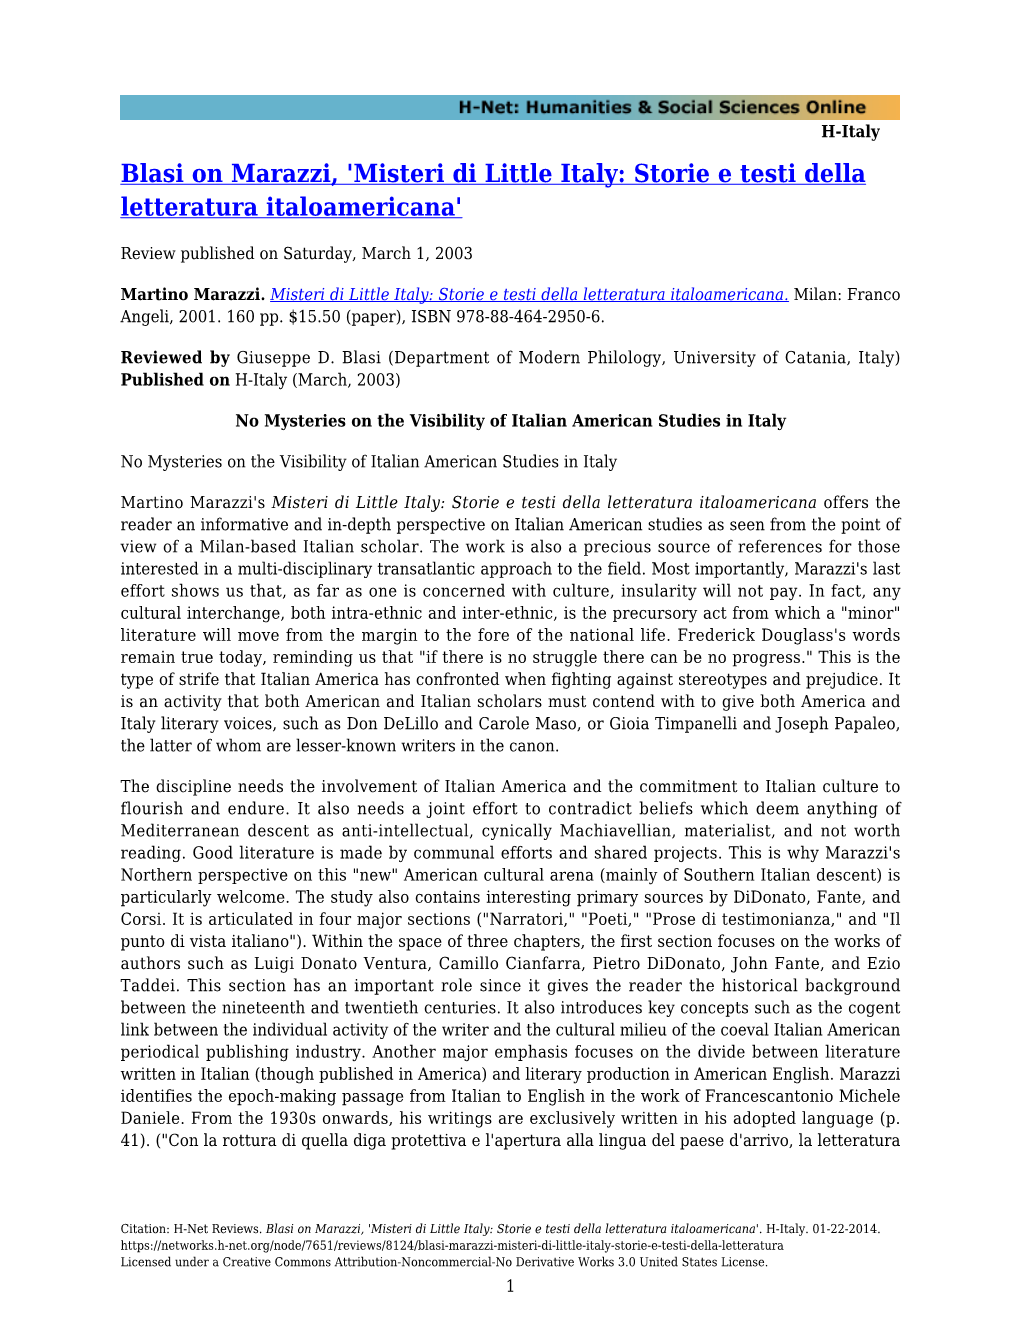 Blasi on Marazzi, 'Misteri Di Little Italy: Storie E Testi Della Letteratura Italoamericana'